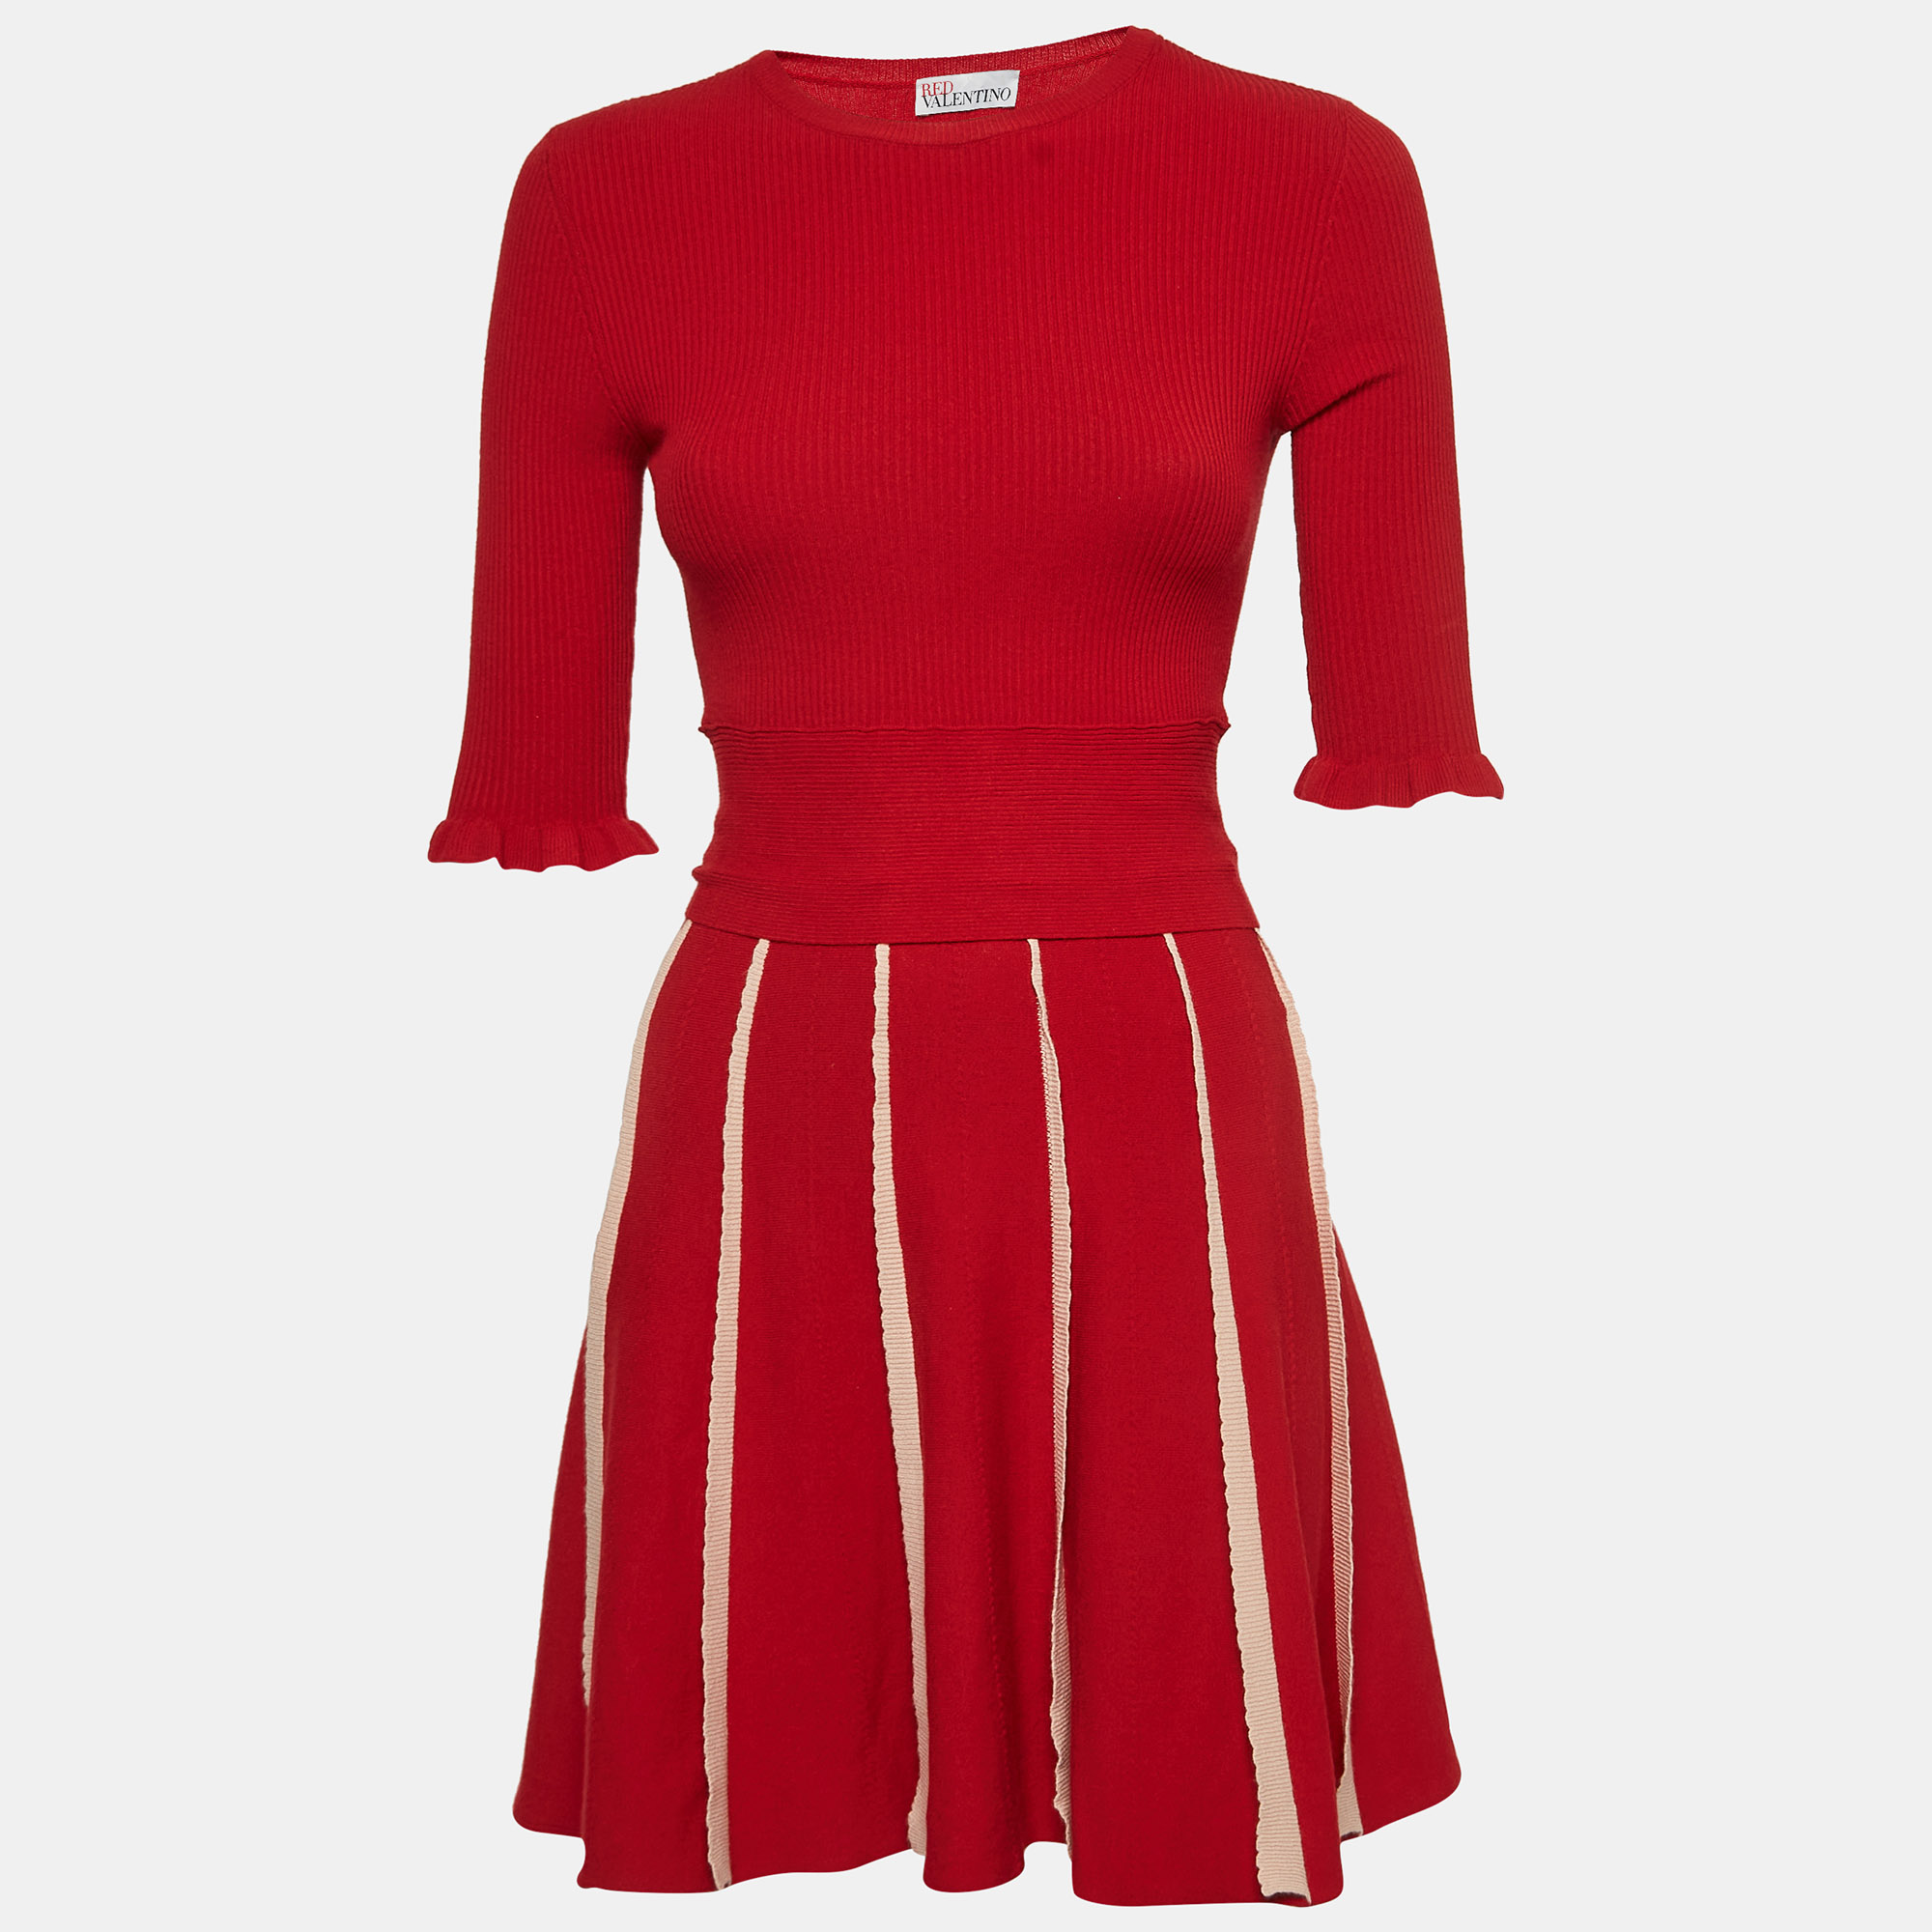 

RED Valentino Red Rib Knit Waist Tie Up Mini Dress XS